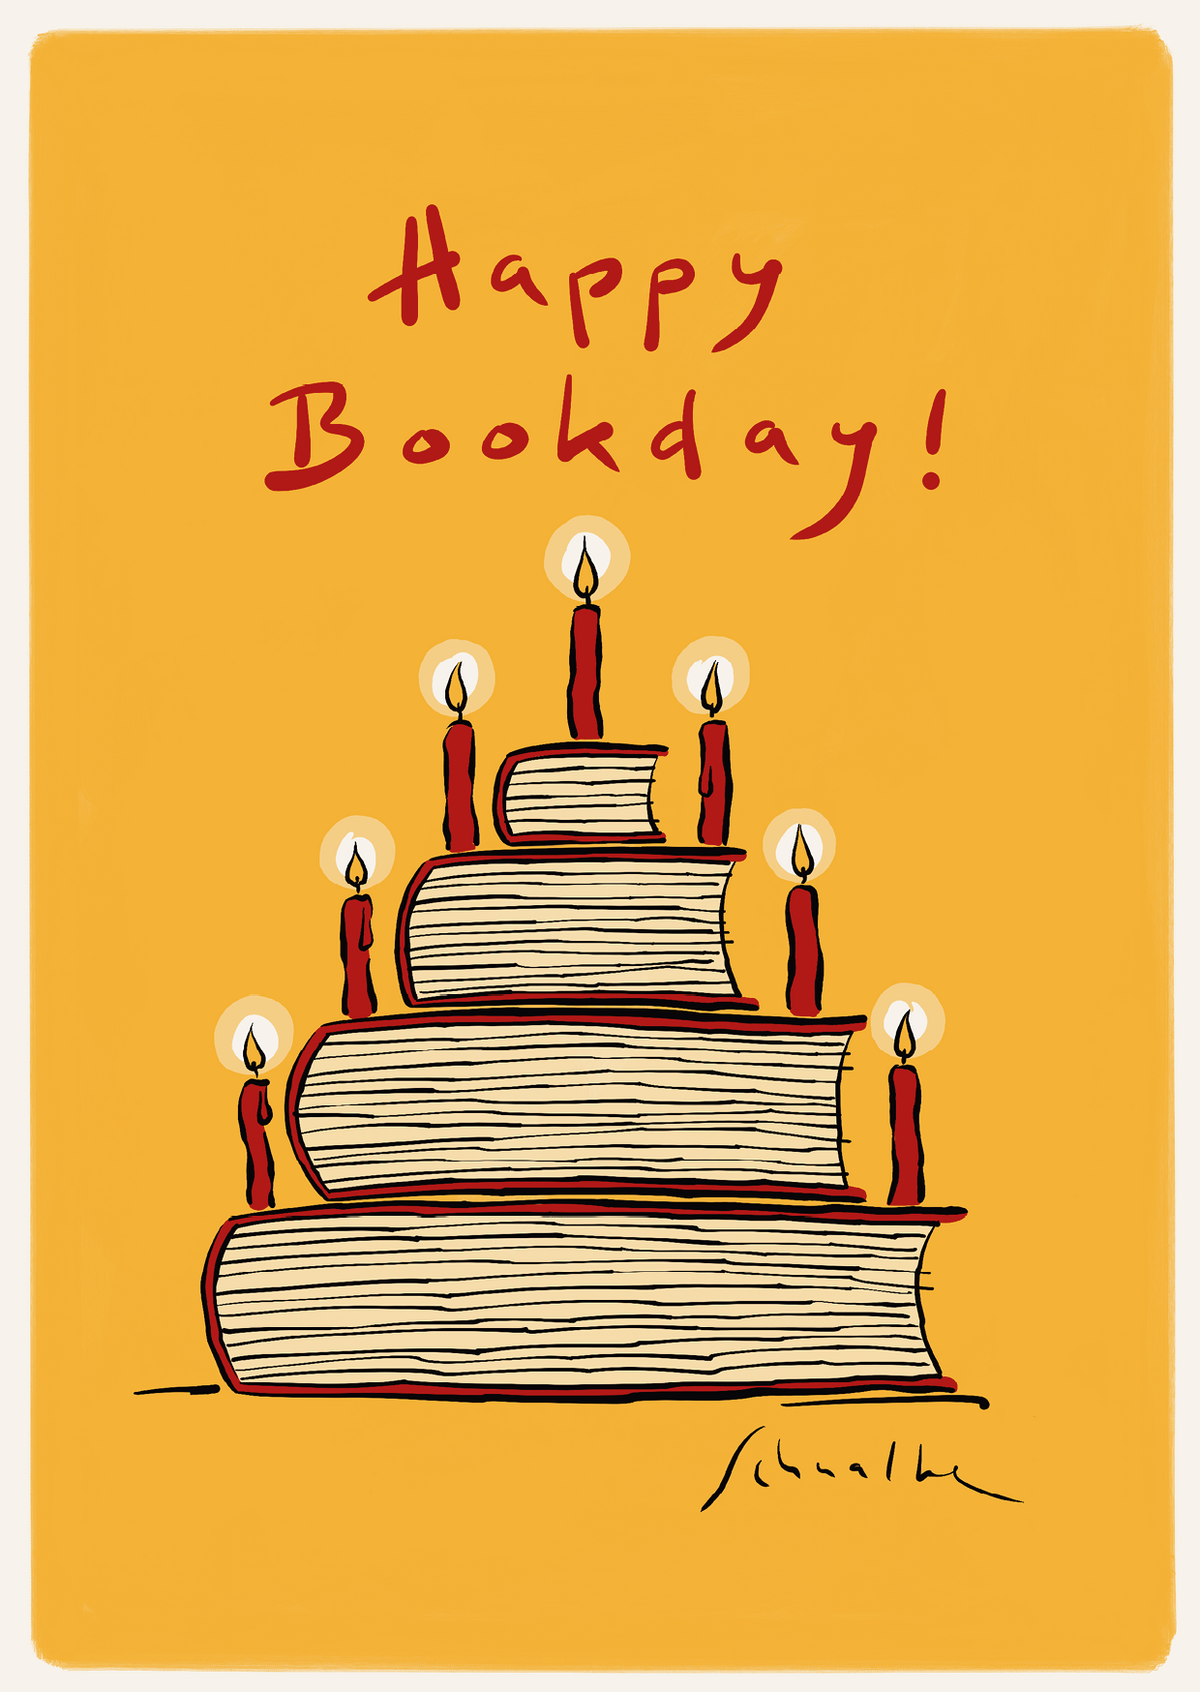 Roter Text auf gelbem Hintergrund "Happy Bookday!", darunter Geburtstagstorte aus Büchern